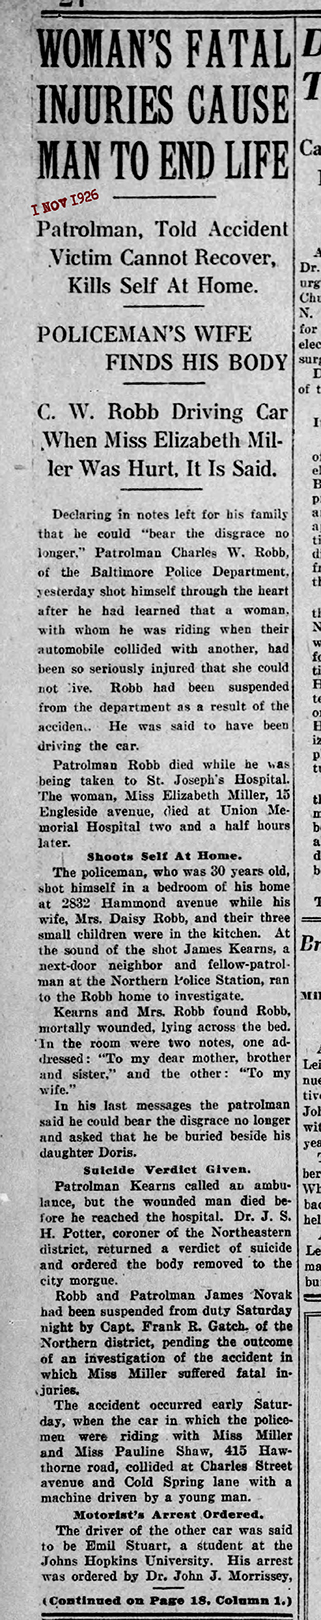 The Baltimore Sun Mon Nov 1 1926 PRT 1 72